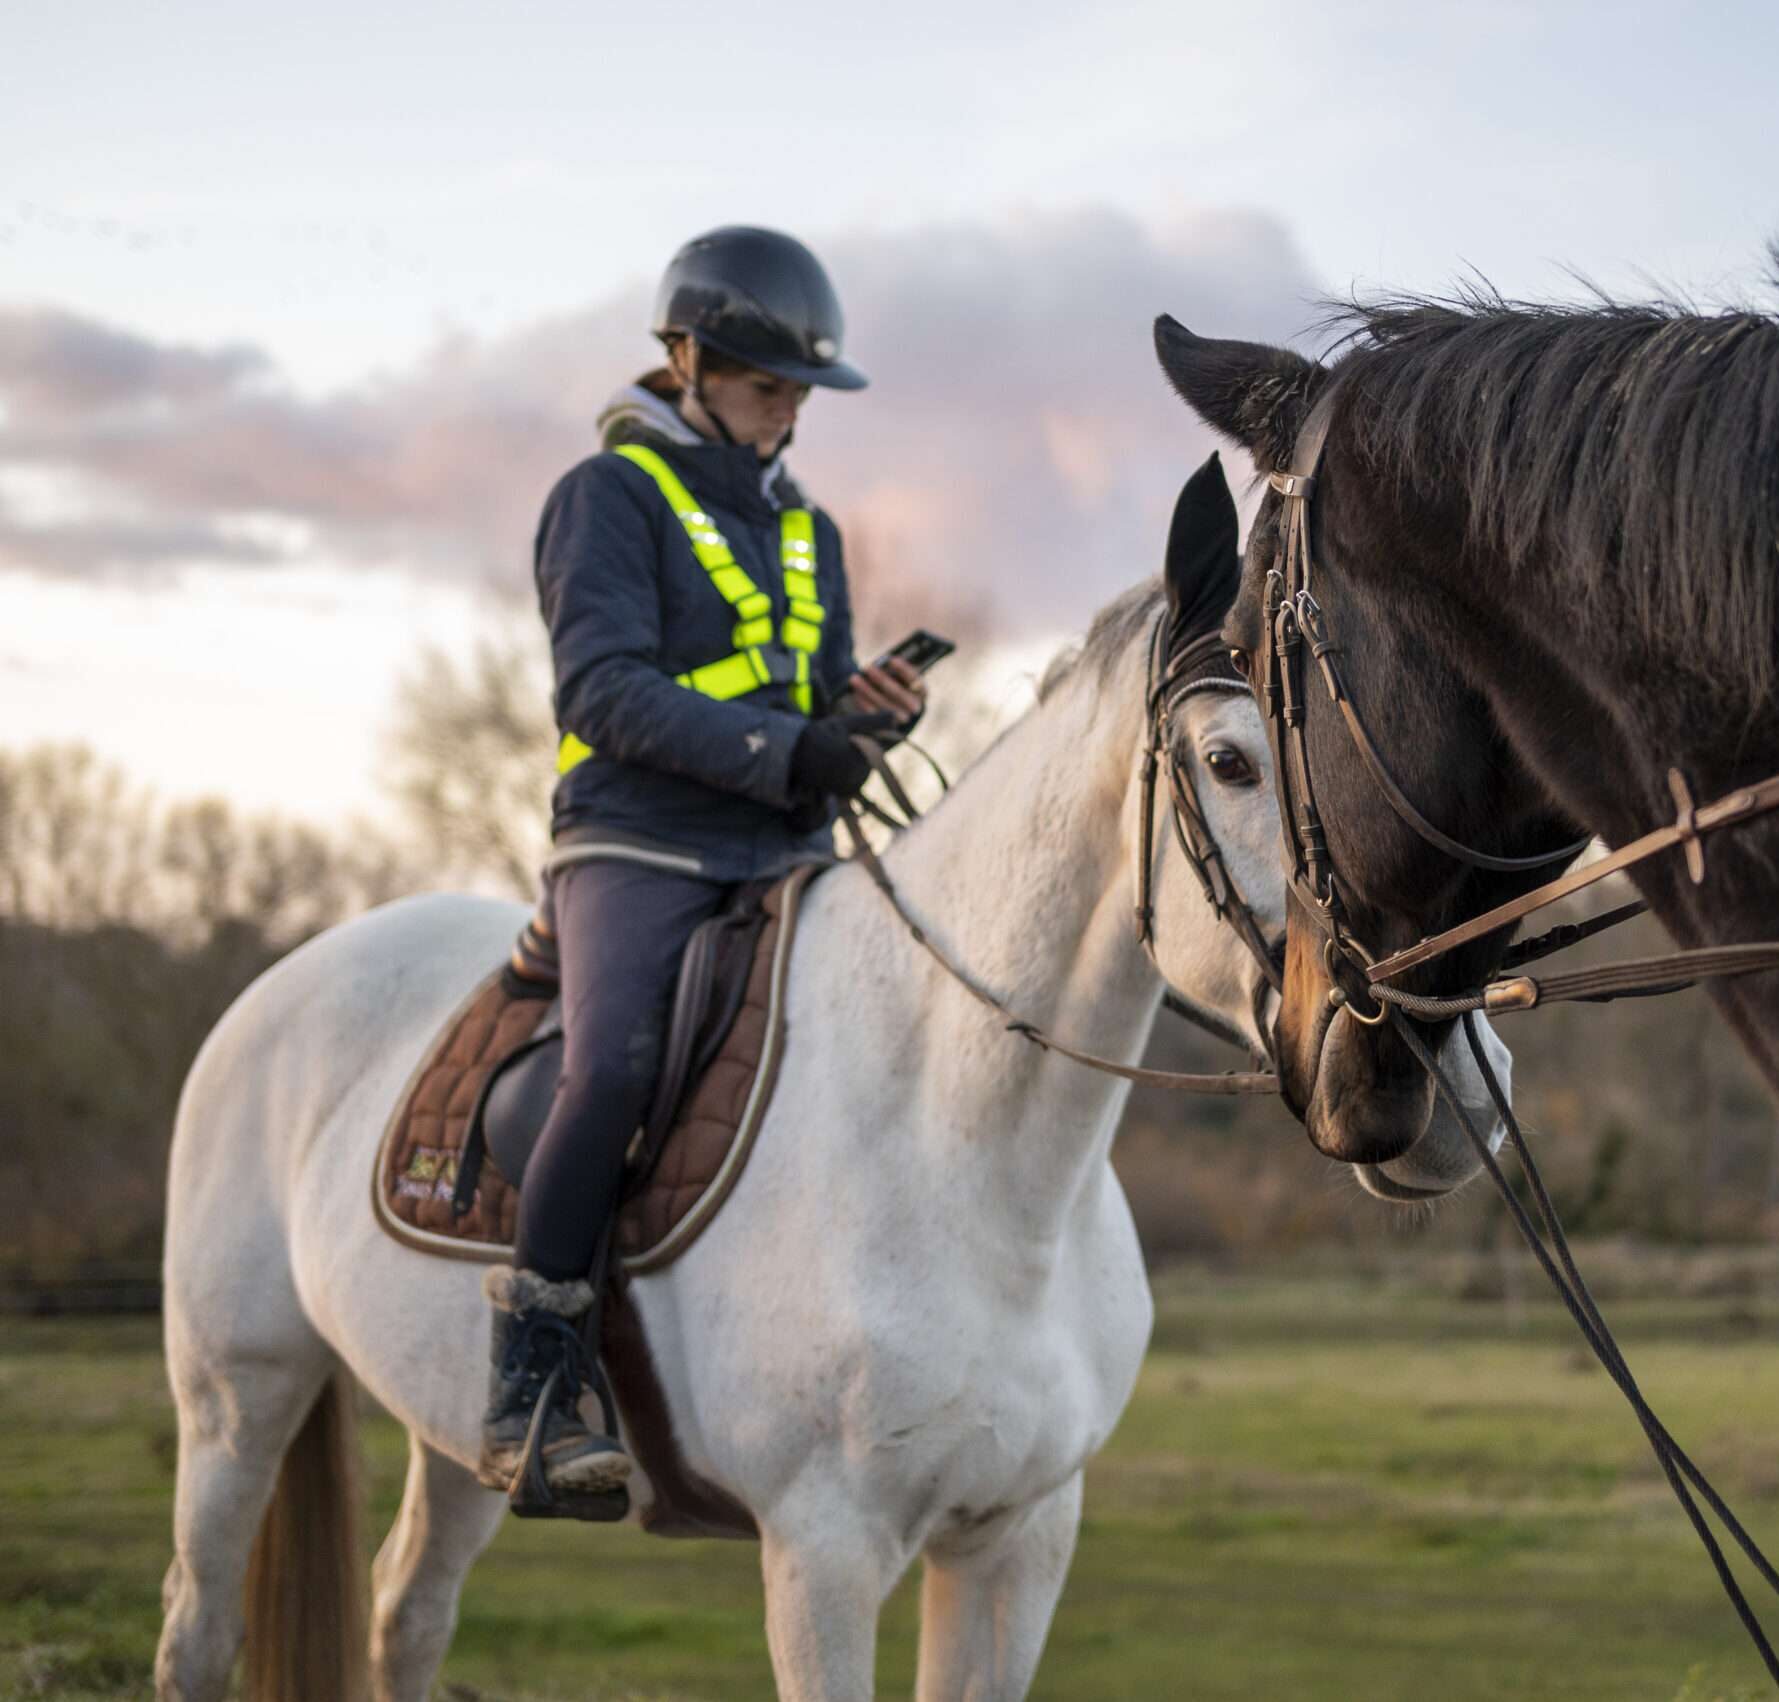 weelight gilet de visibilité pour l'équitation proposé par Askara 100% fabriqué en France